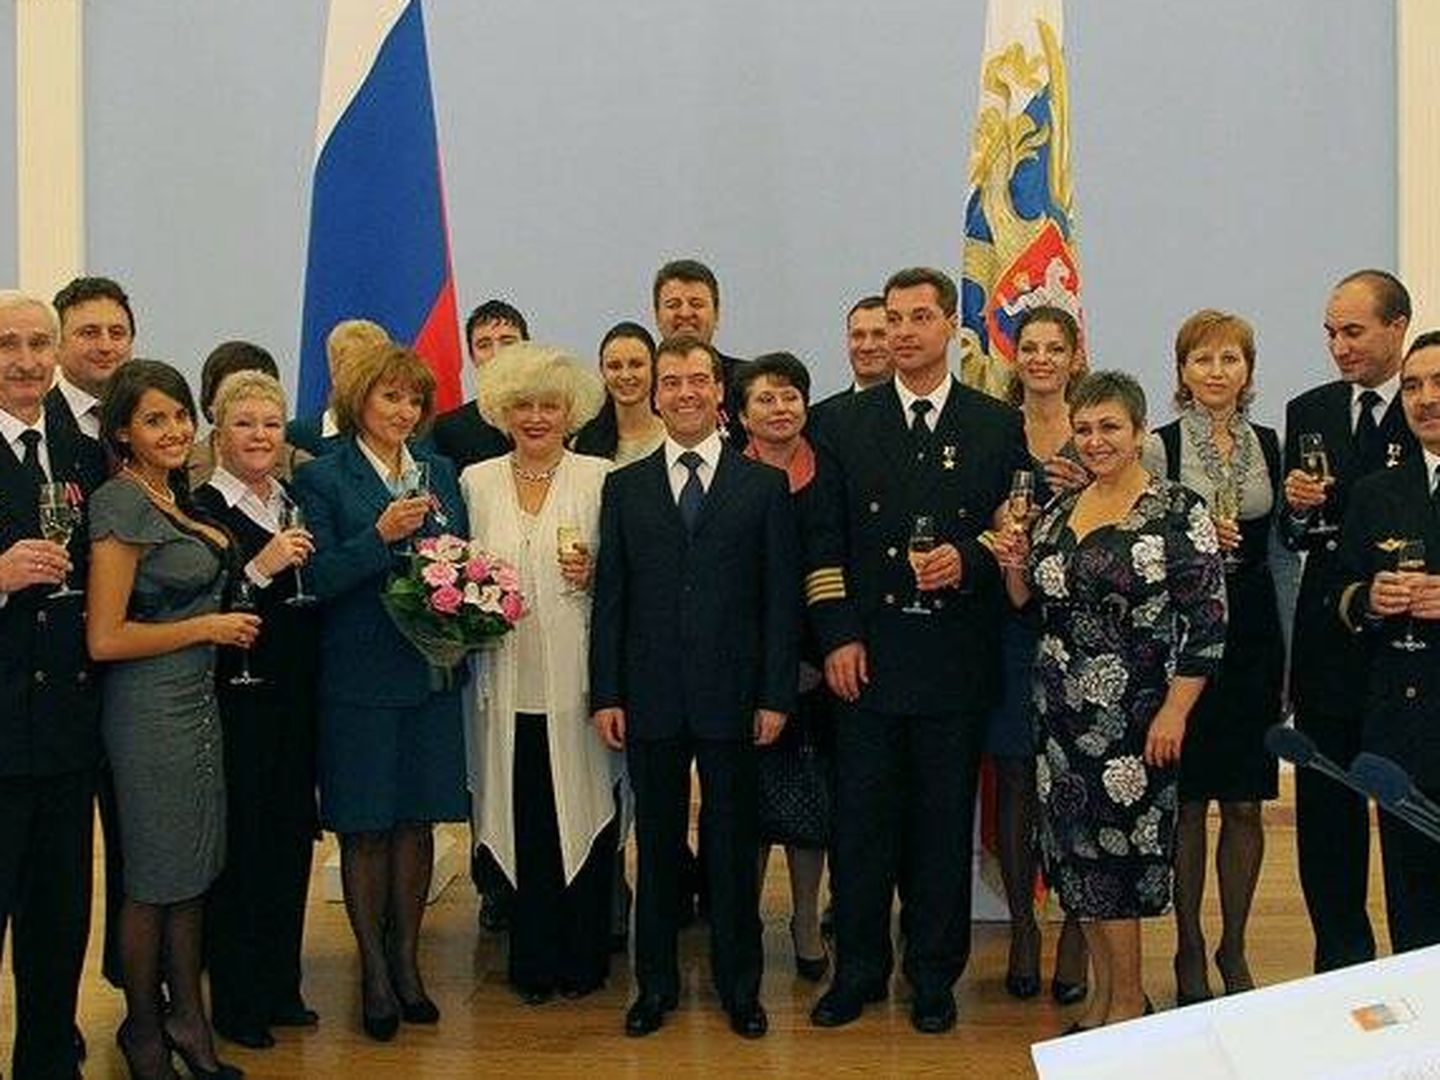 El presidente ruso Dmitry Medvedev (en el centro) recibiendo a la tripulación del vuelo 512 en 2010 (Fuente: Wikimedia / Kremlin)